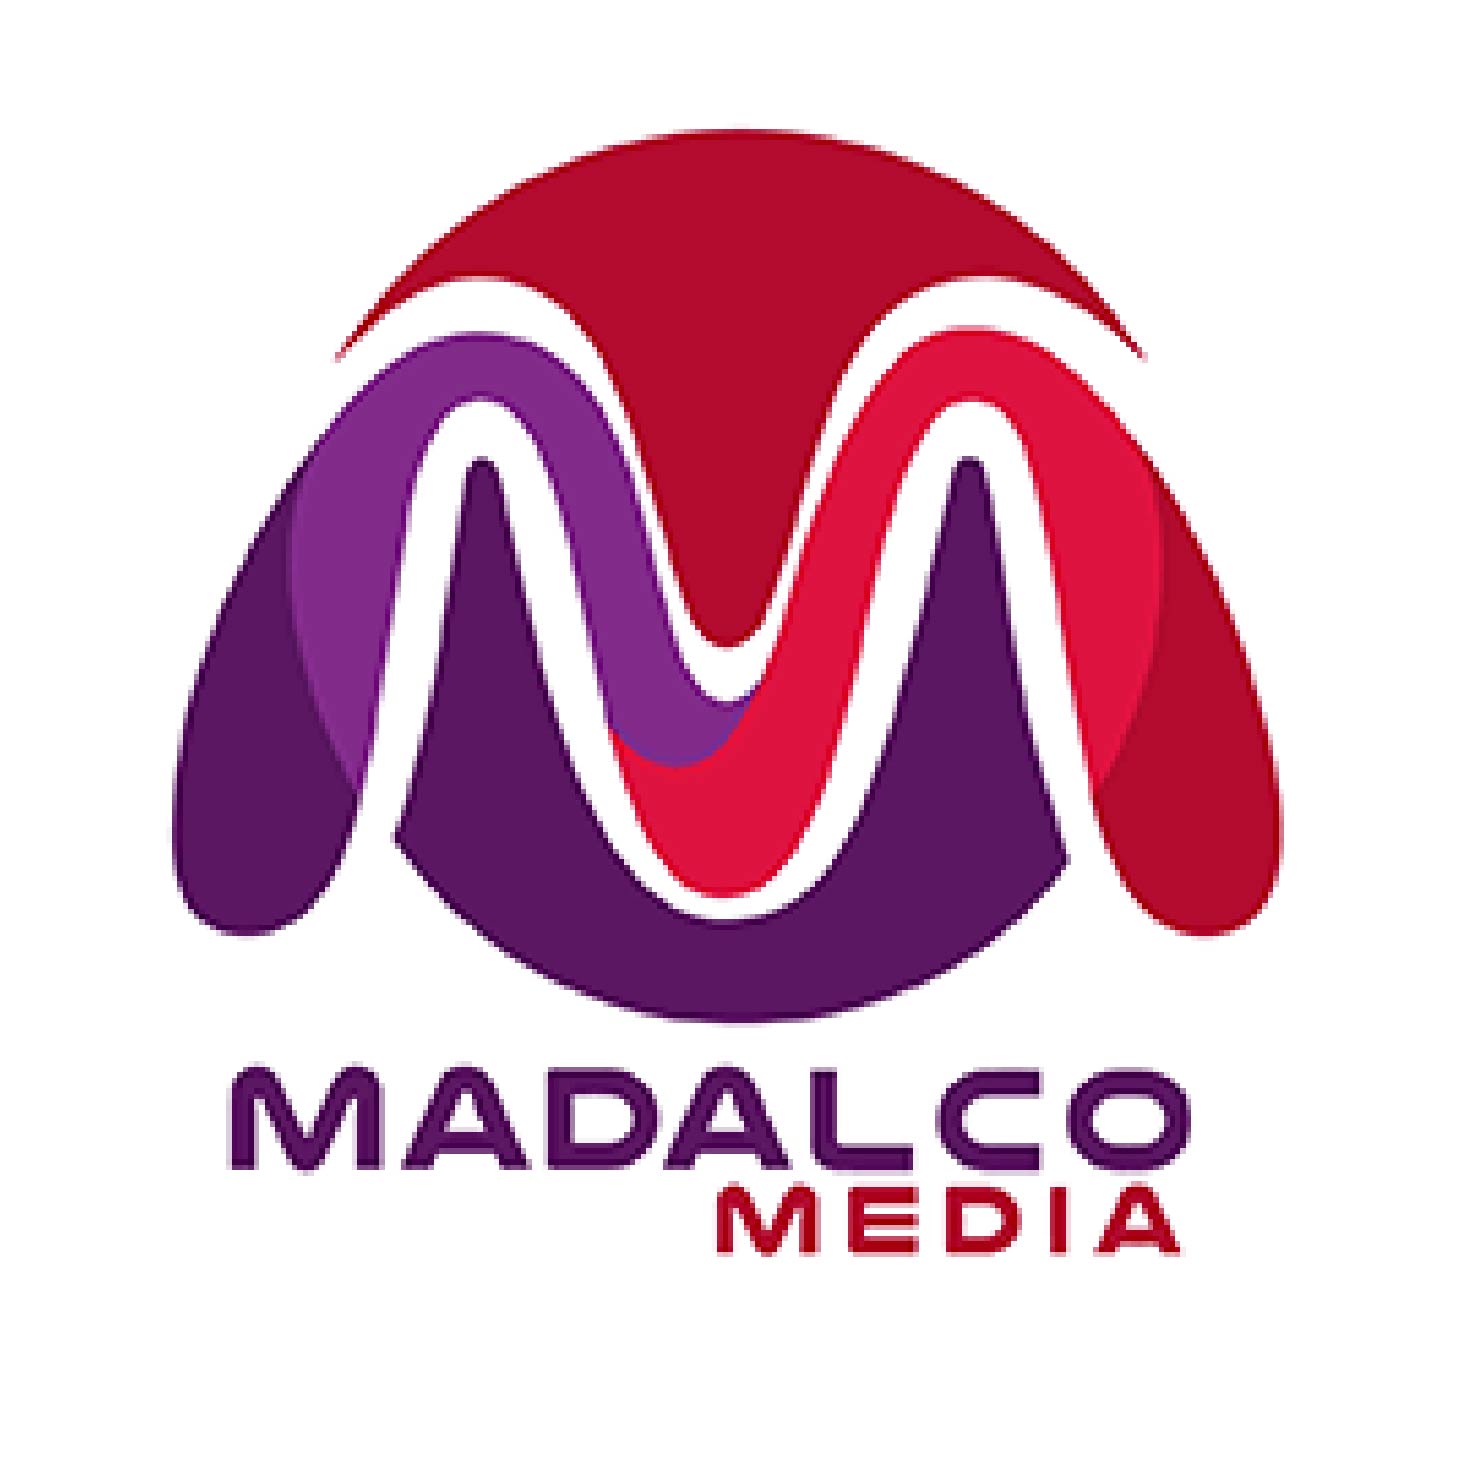 Madalco media